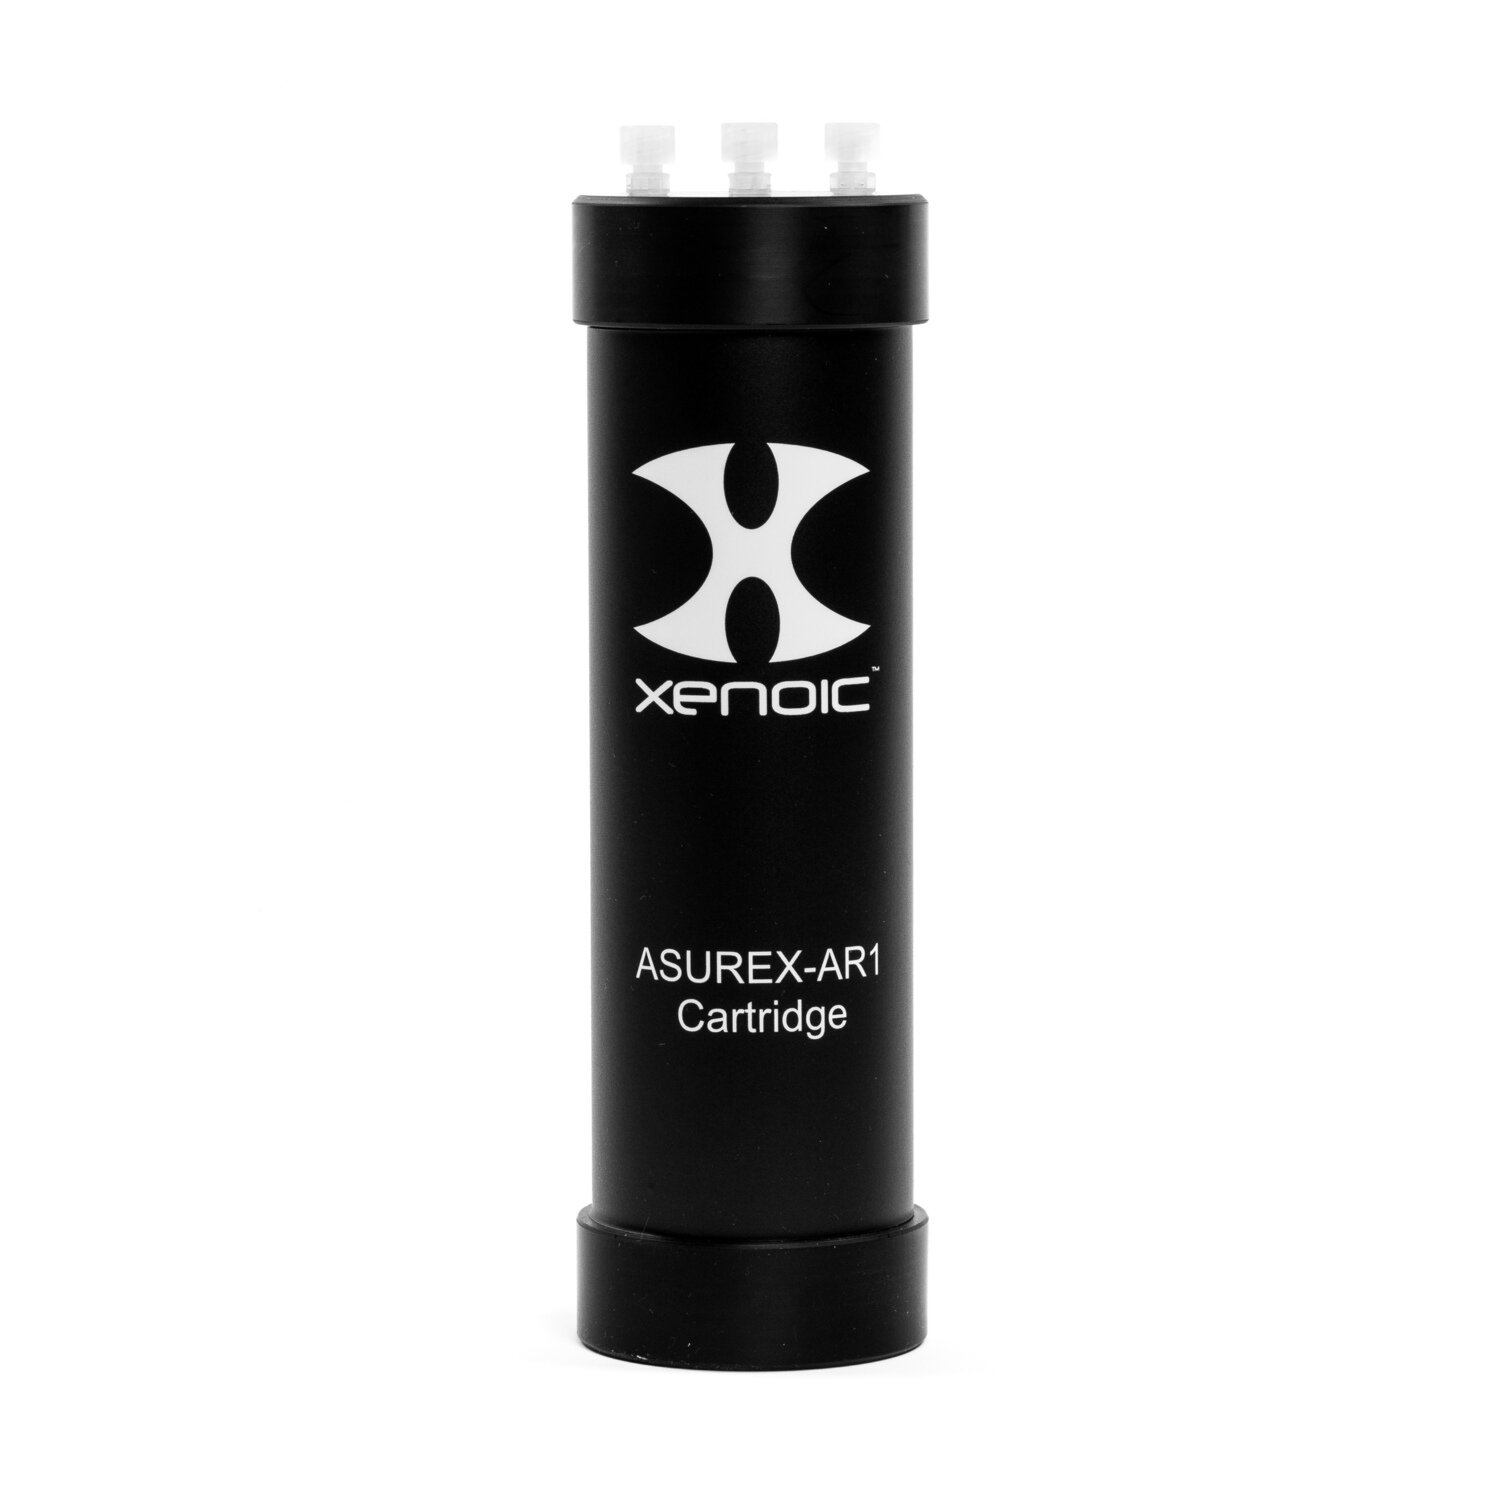 ASUREX-AR1 Cartridge